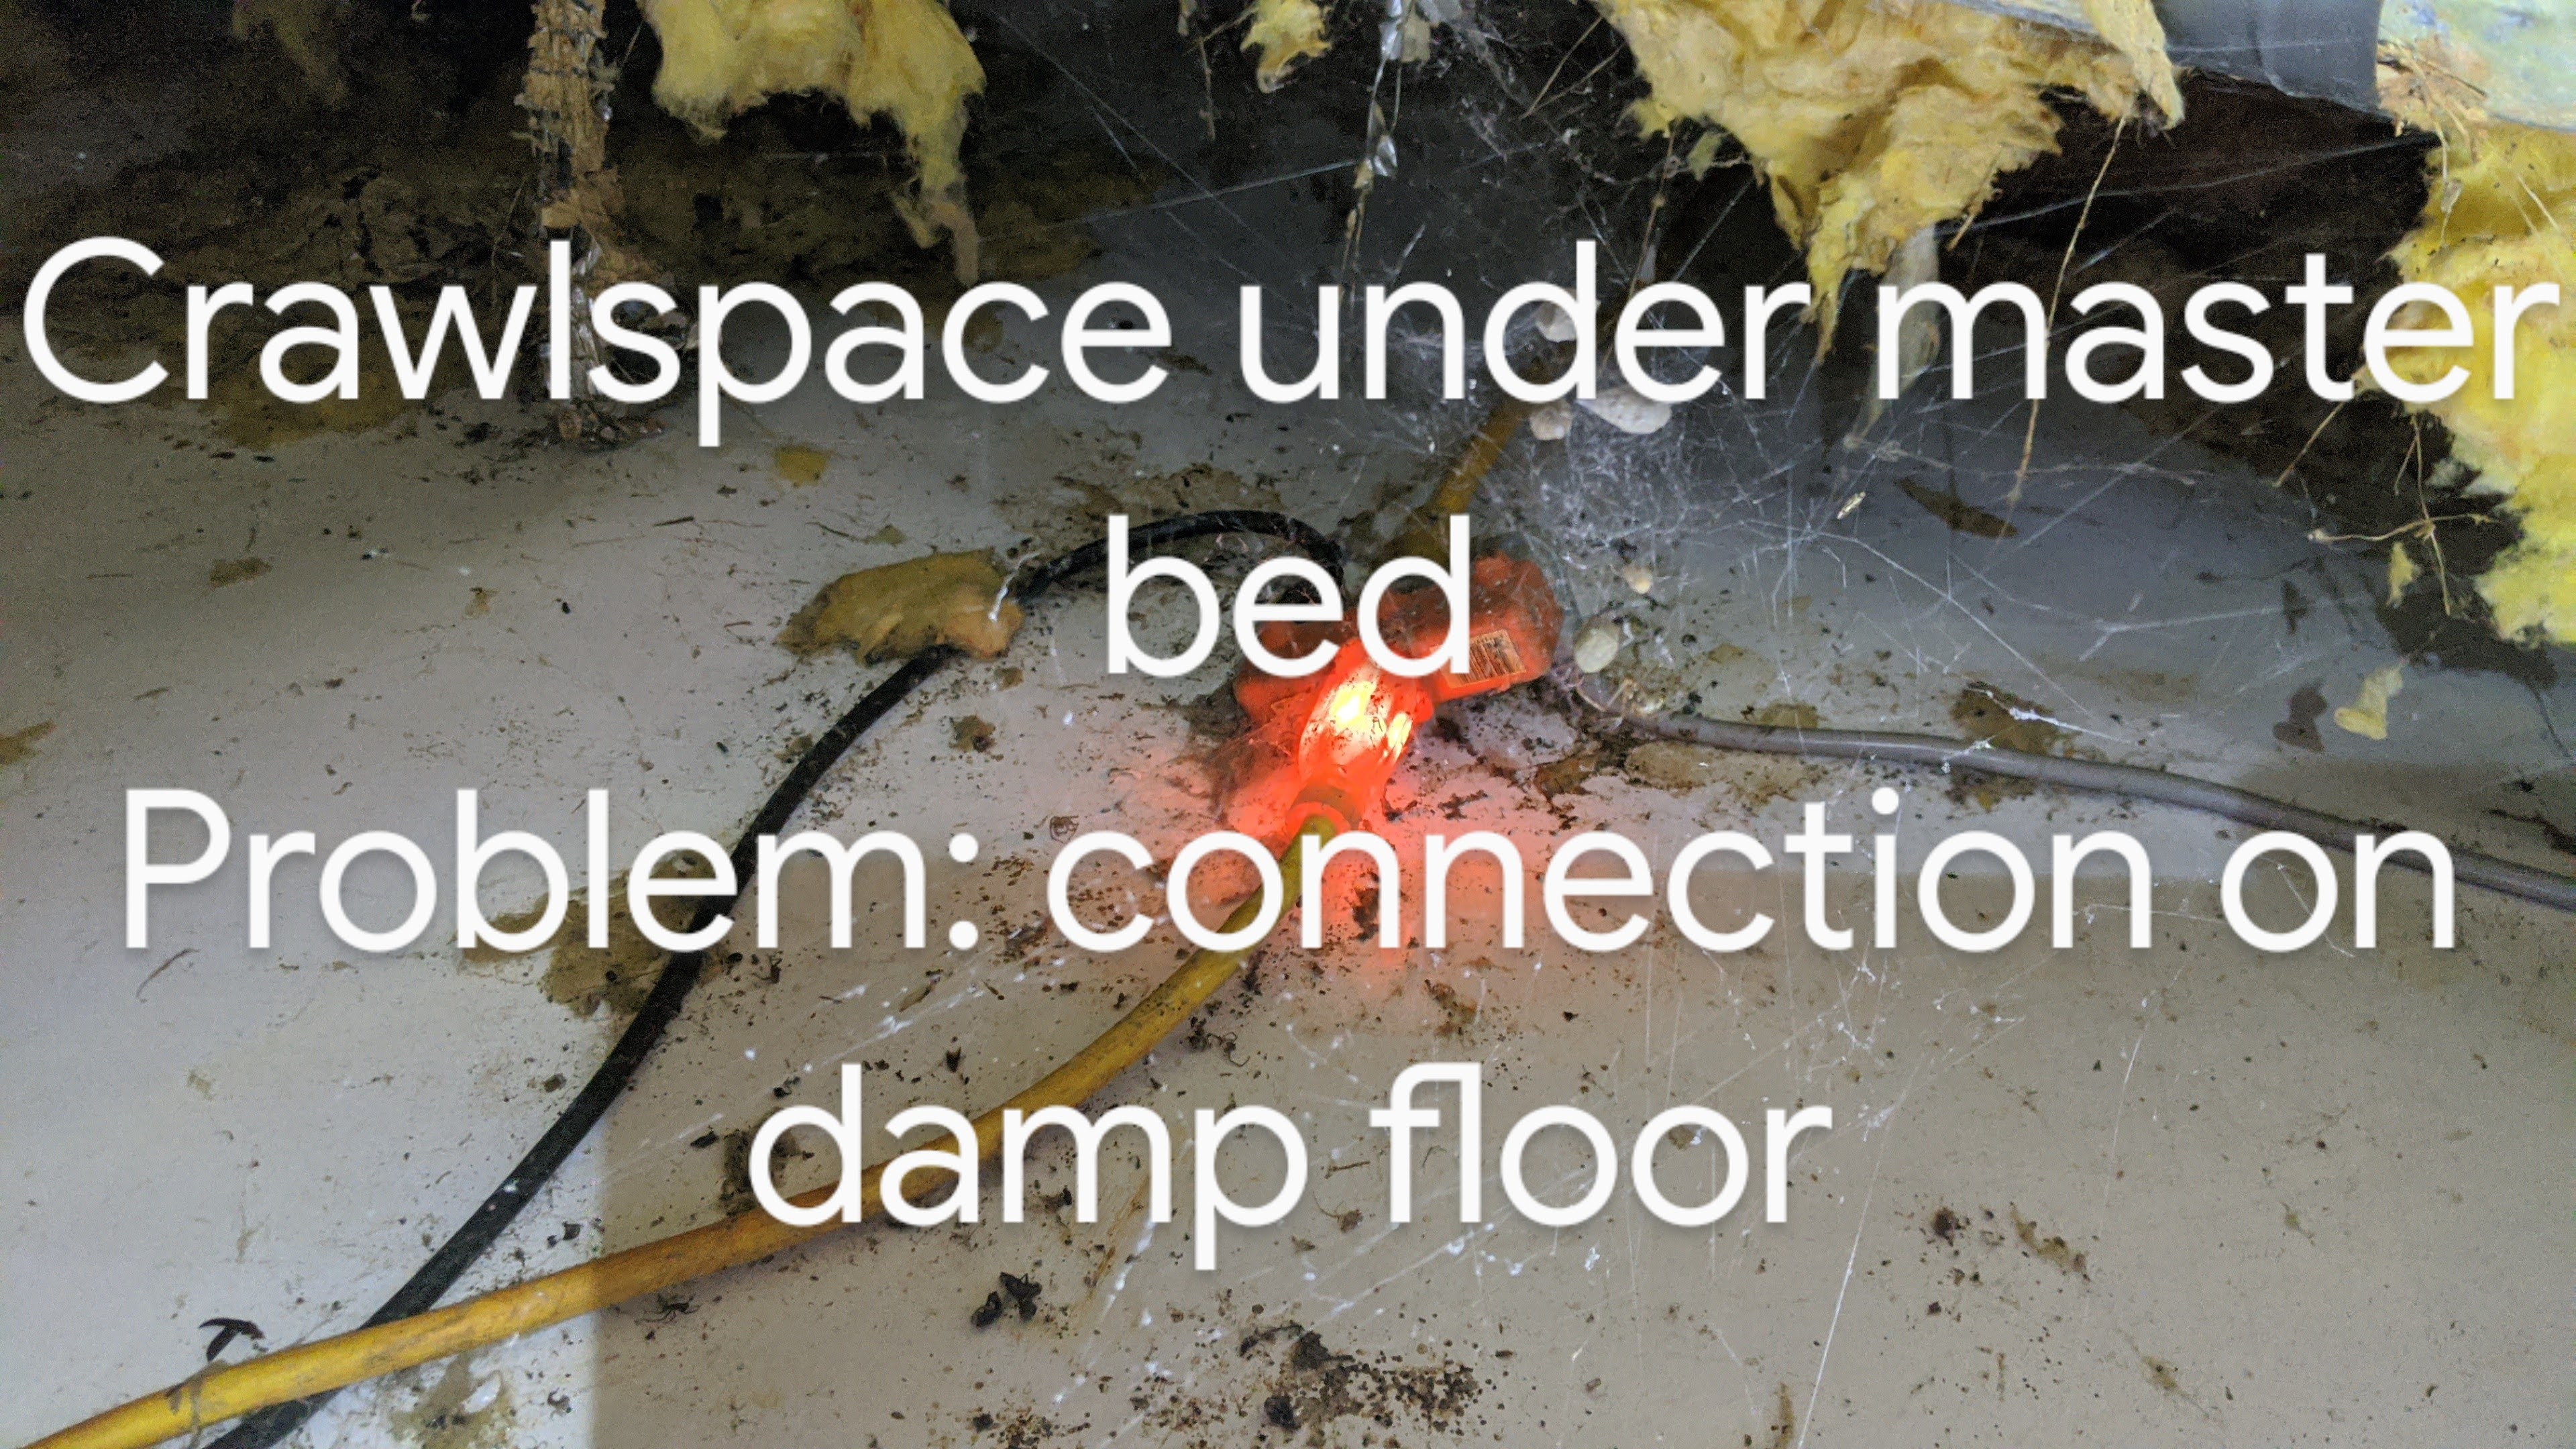 Crawlspace under master bed